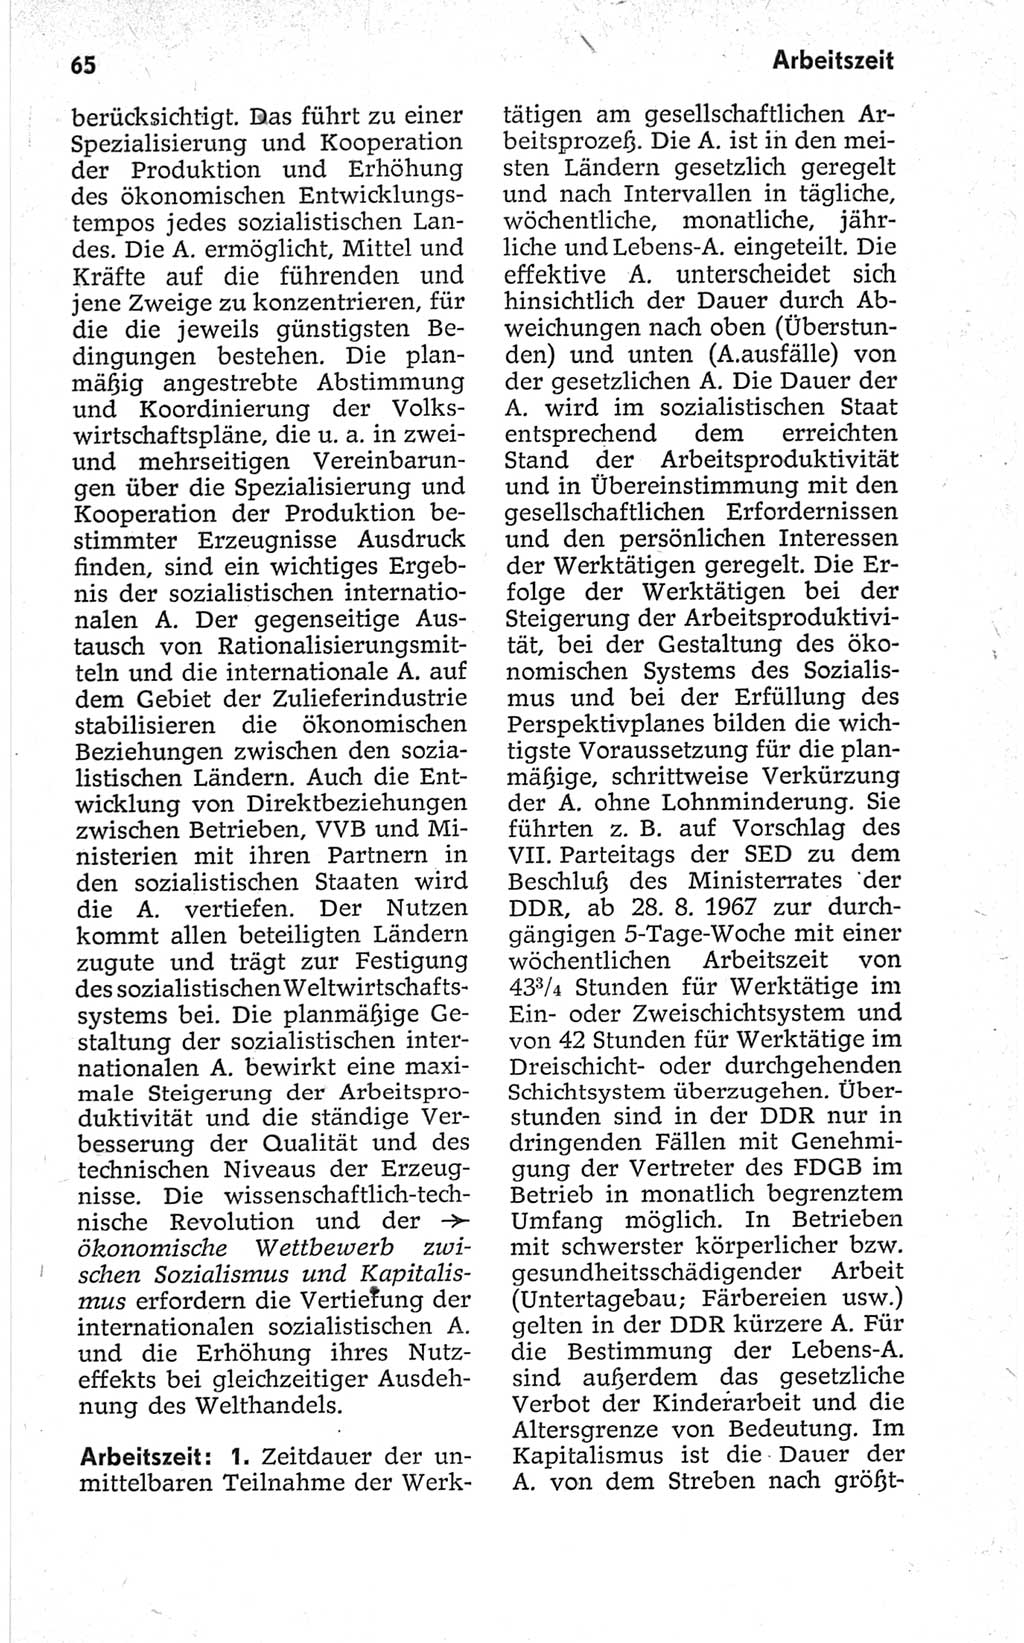 Kleines politisches Wörterbuch [Deutsche Demokratische Republik (DDR)] 1967, Seite 65 (Kl. pol. Wb. DDR 1967, S. 65)